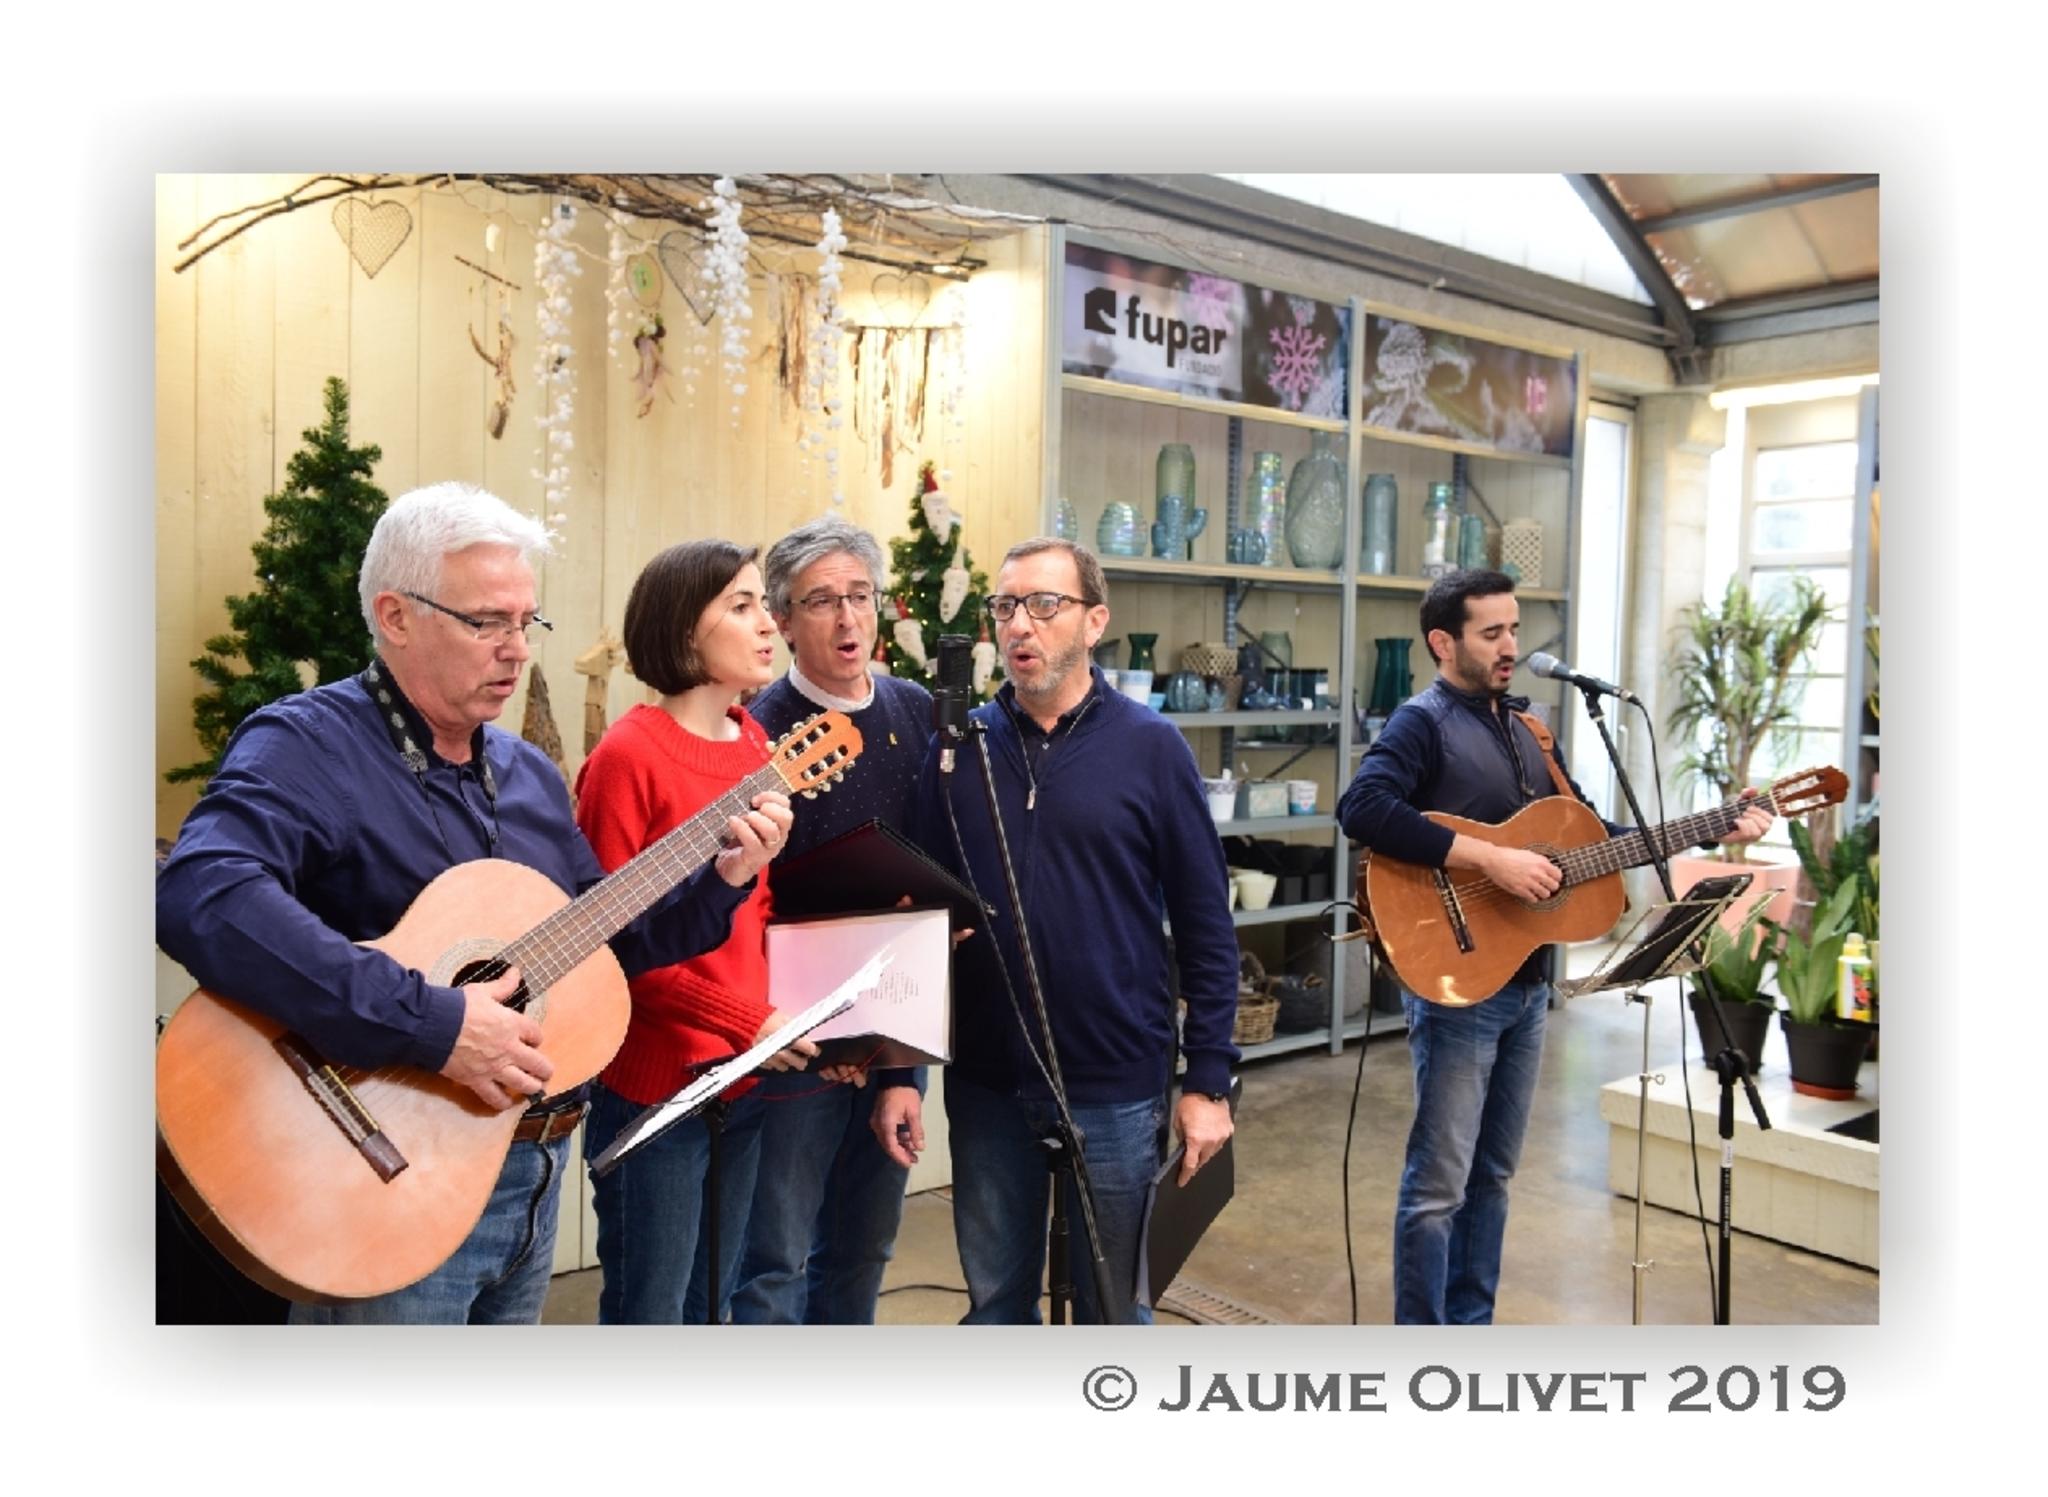  Jaume Olivet 2019